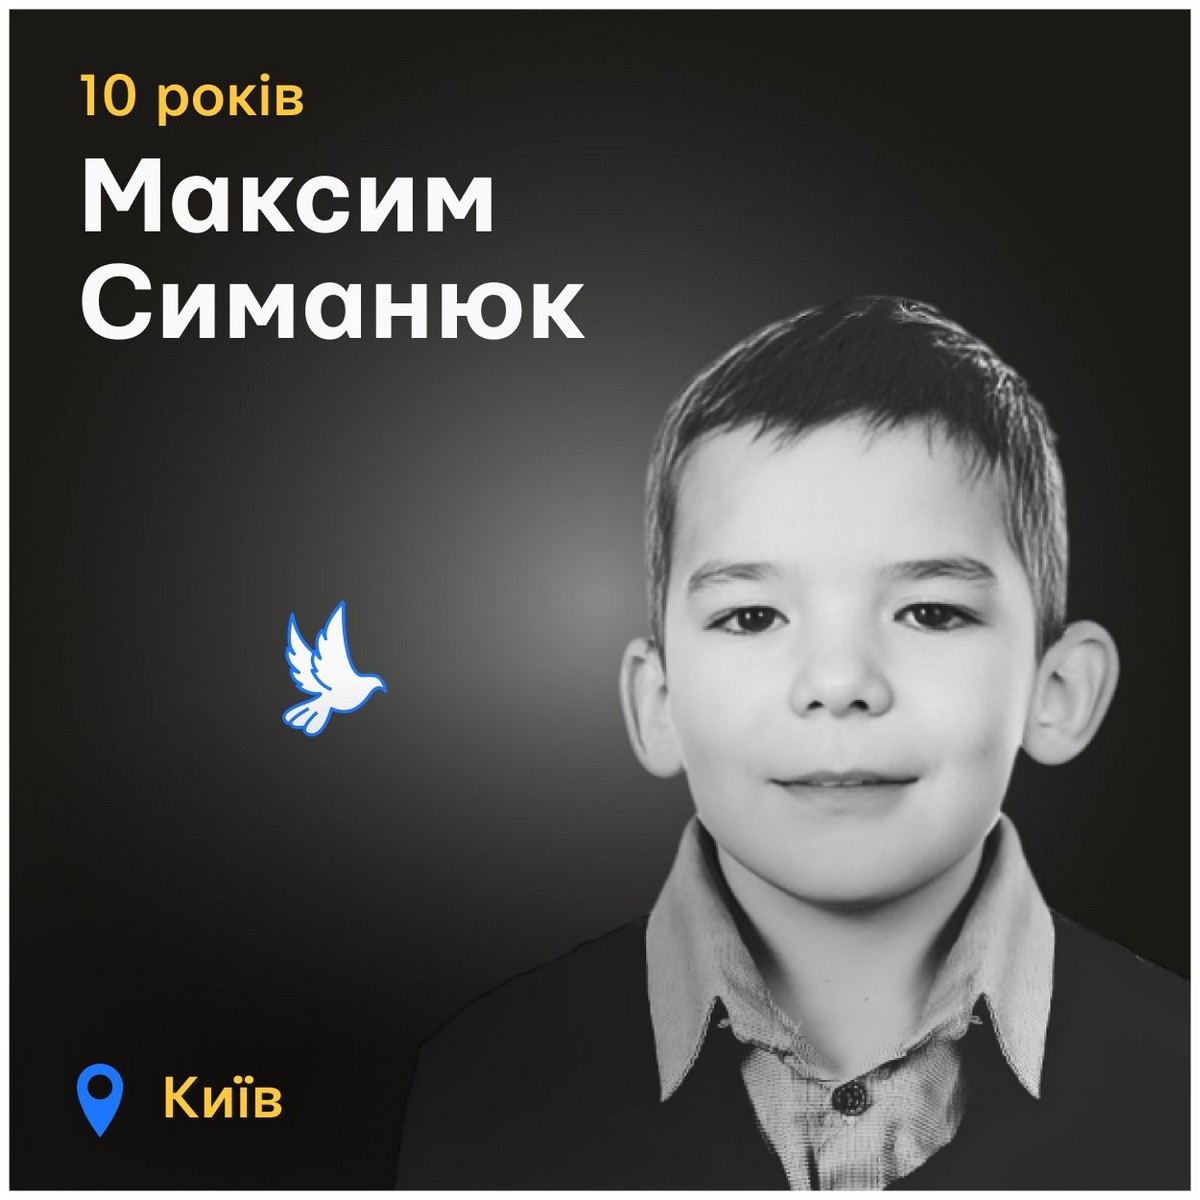 Меморіал: вбиті росією. Максим Симанюк, 10 років, Київ, липень